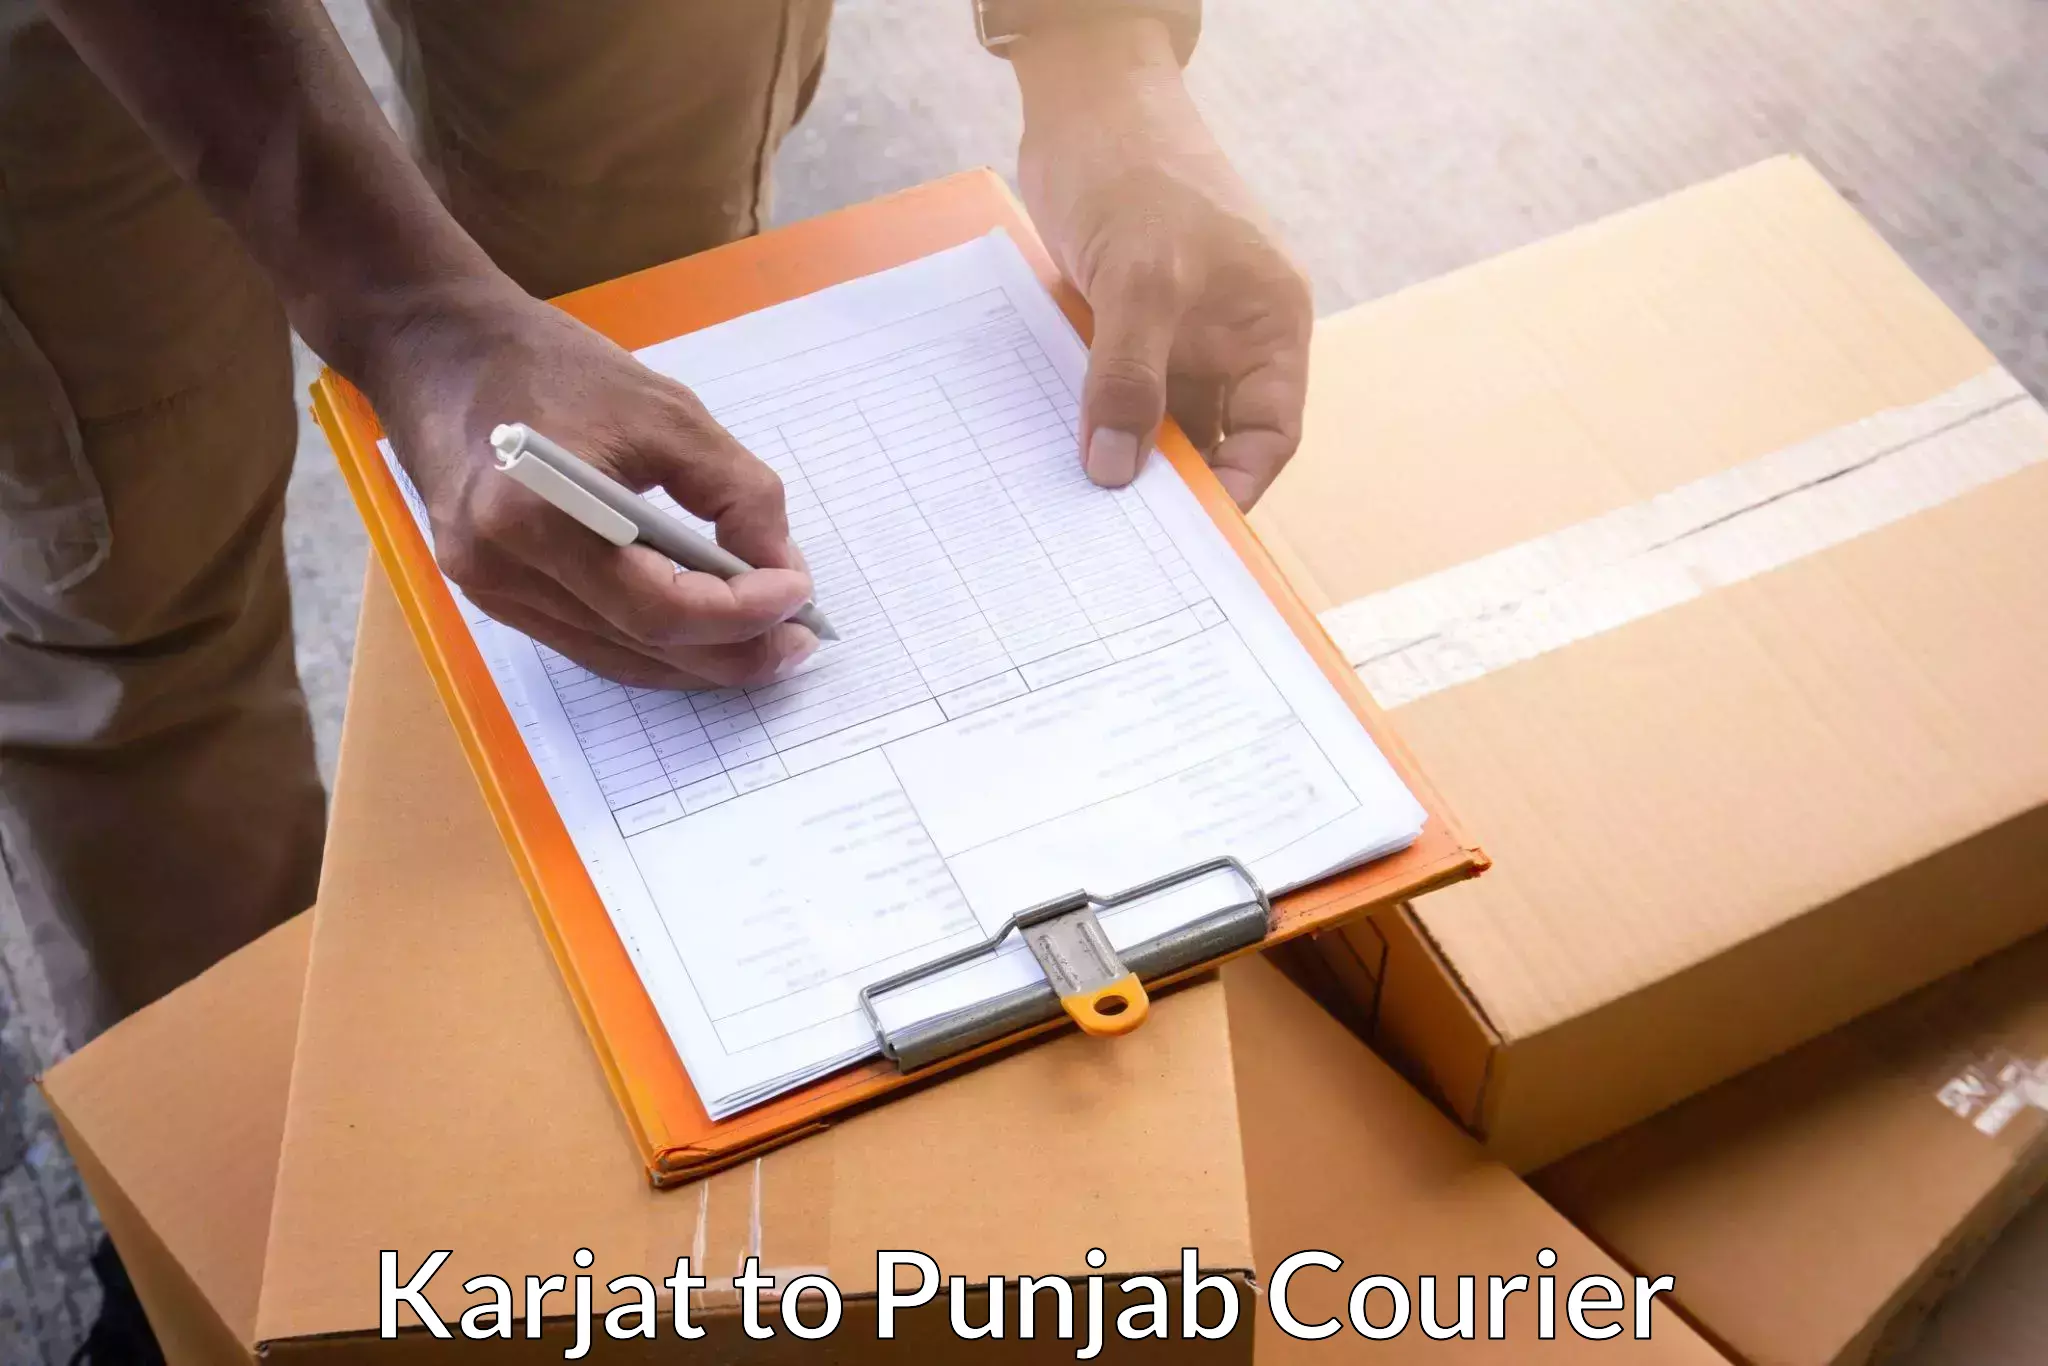 Cash on delivery service Karjat to Punjab